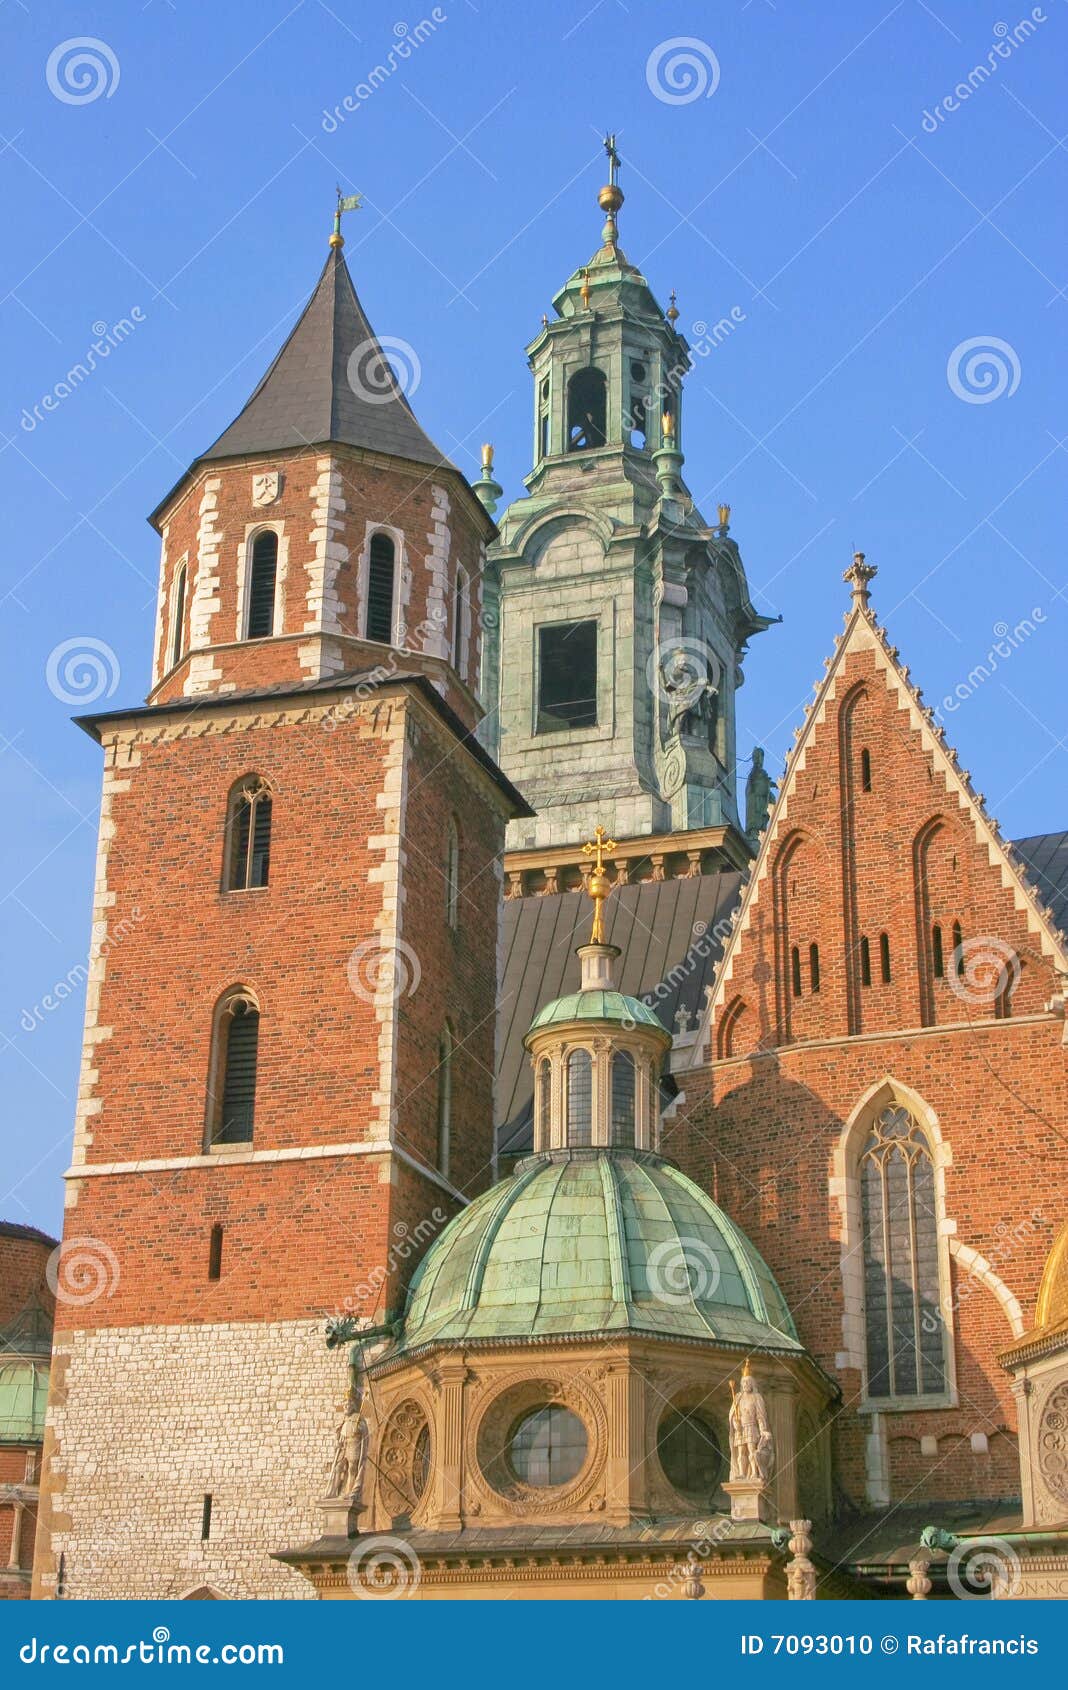 Mittelalterliches Krakau. Die mittelalterliche Stadt von Krakau in Polen